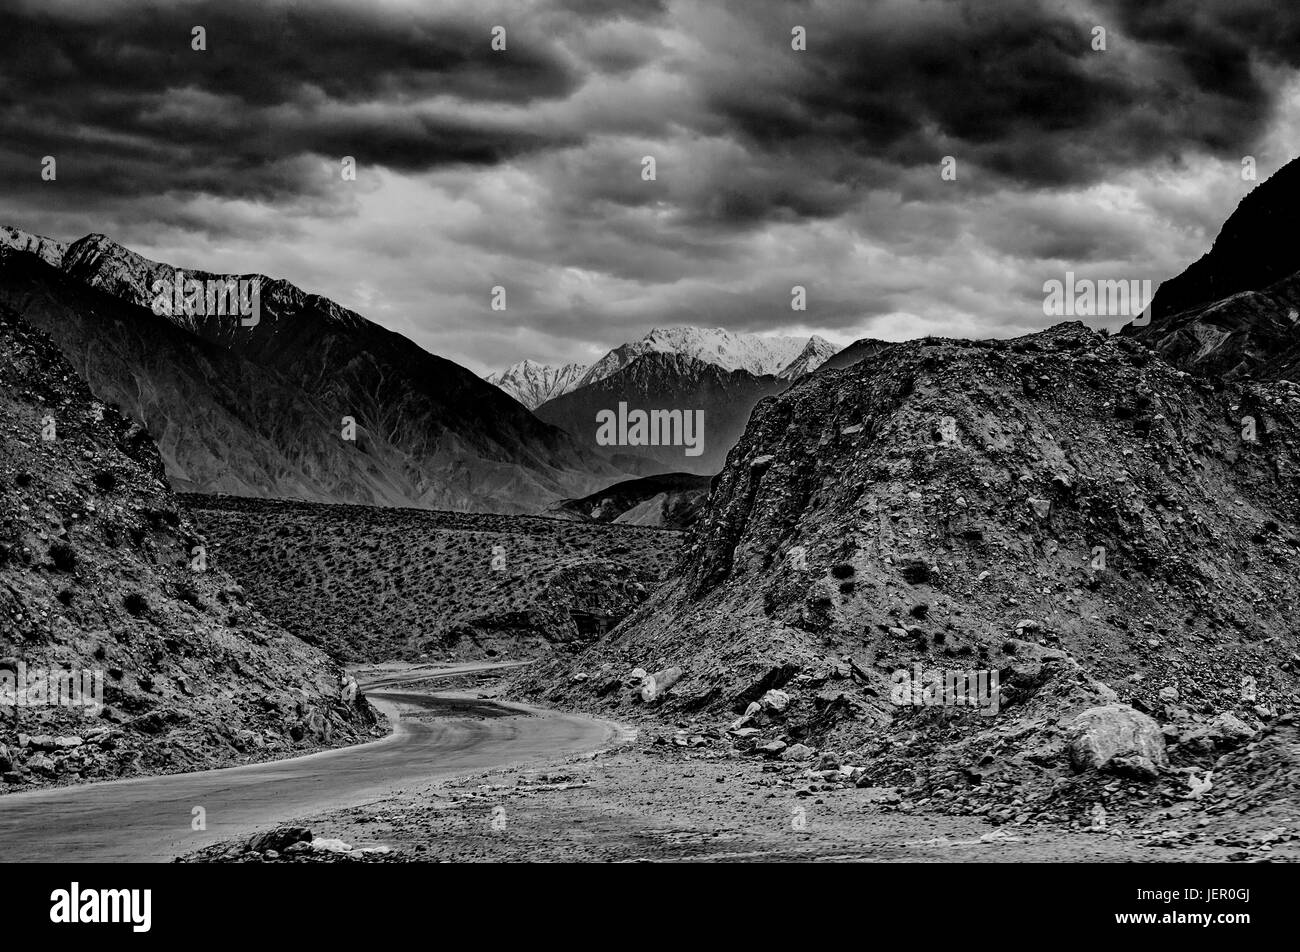 Beau paysage de la vallée, zone nord du Pakistan Banque D'Images